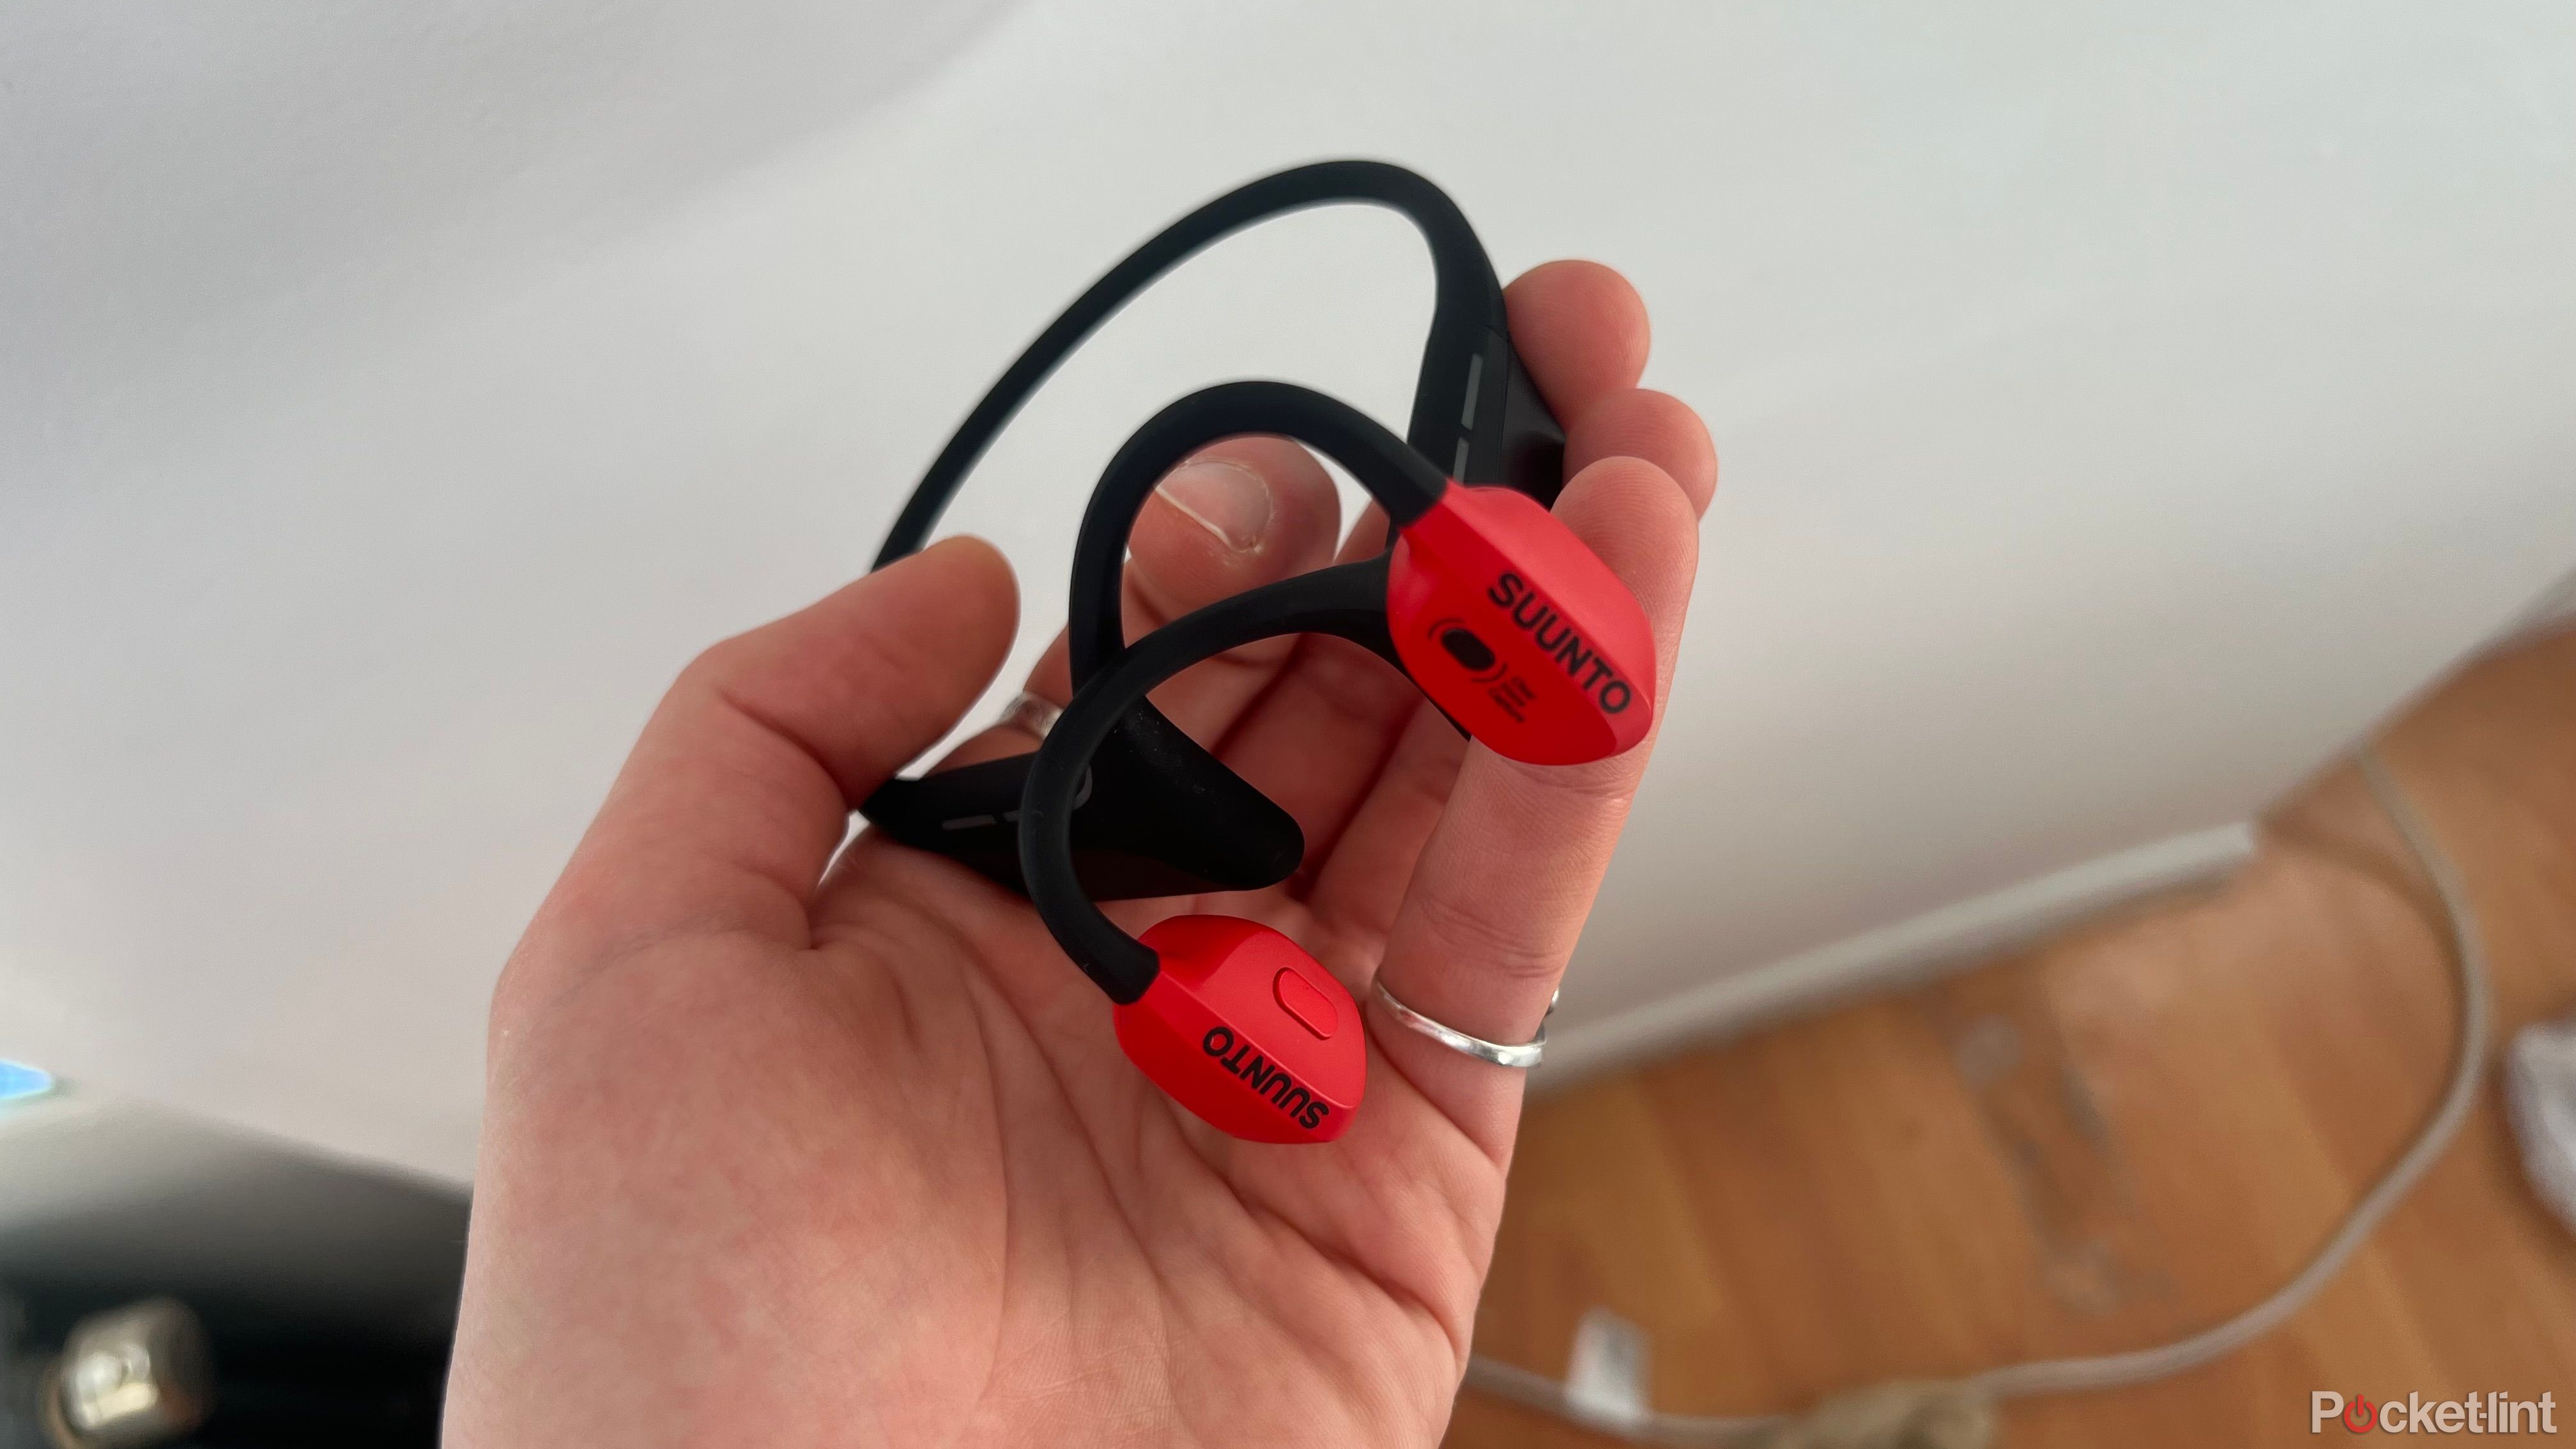 Suunto Wing headphones in hand